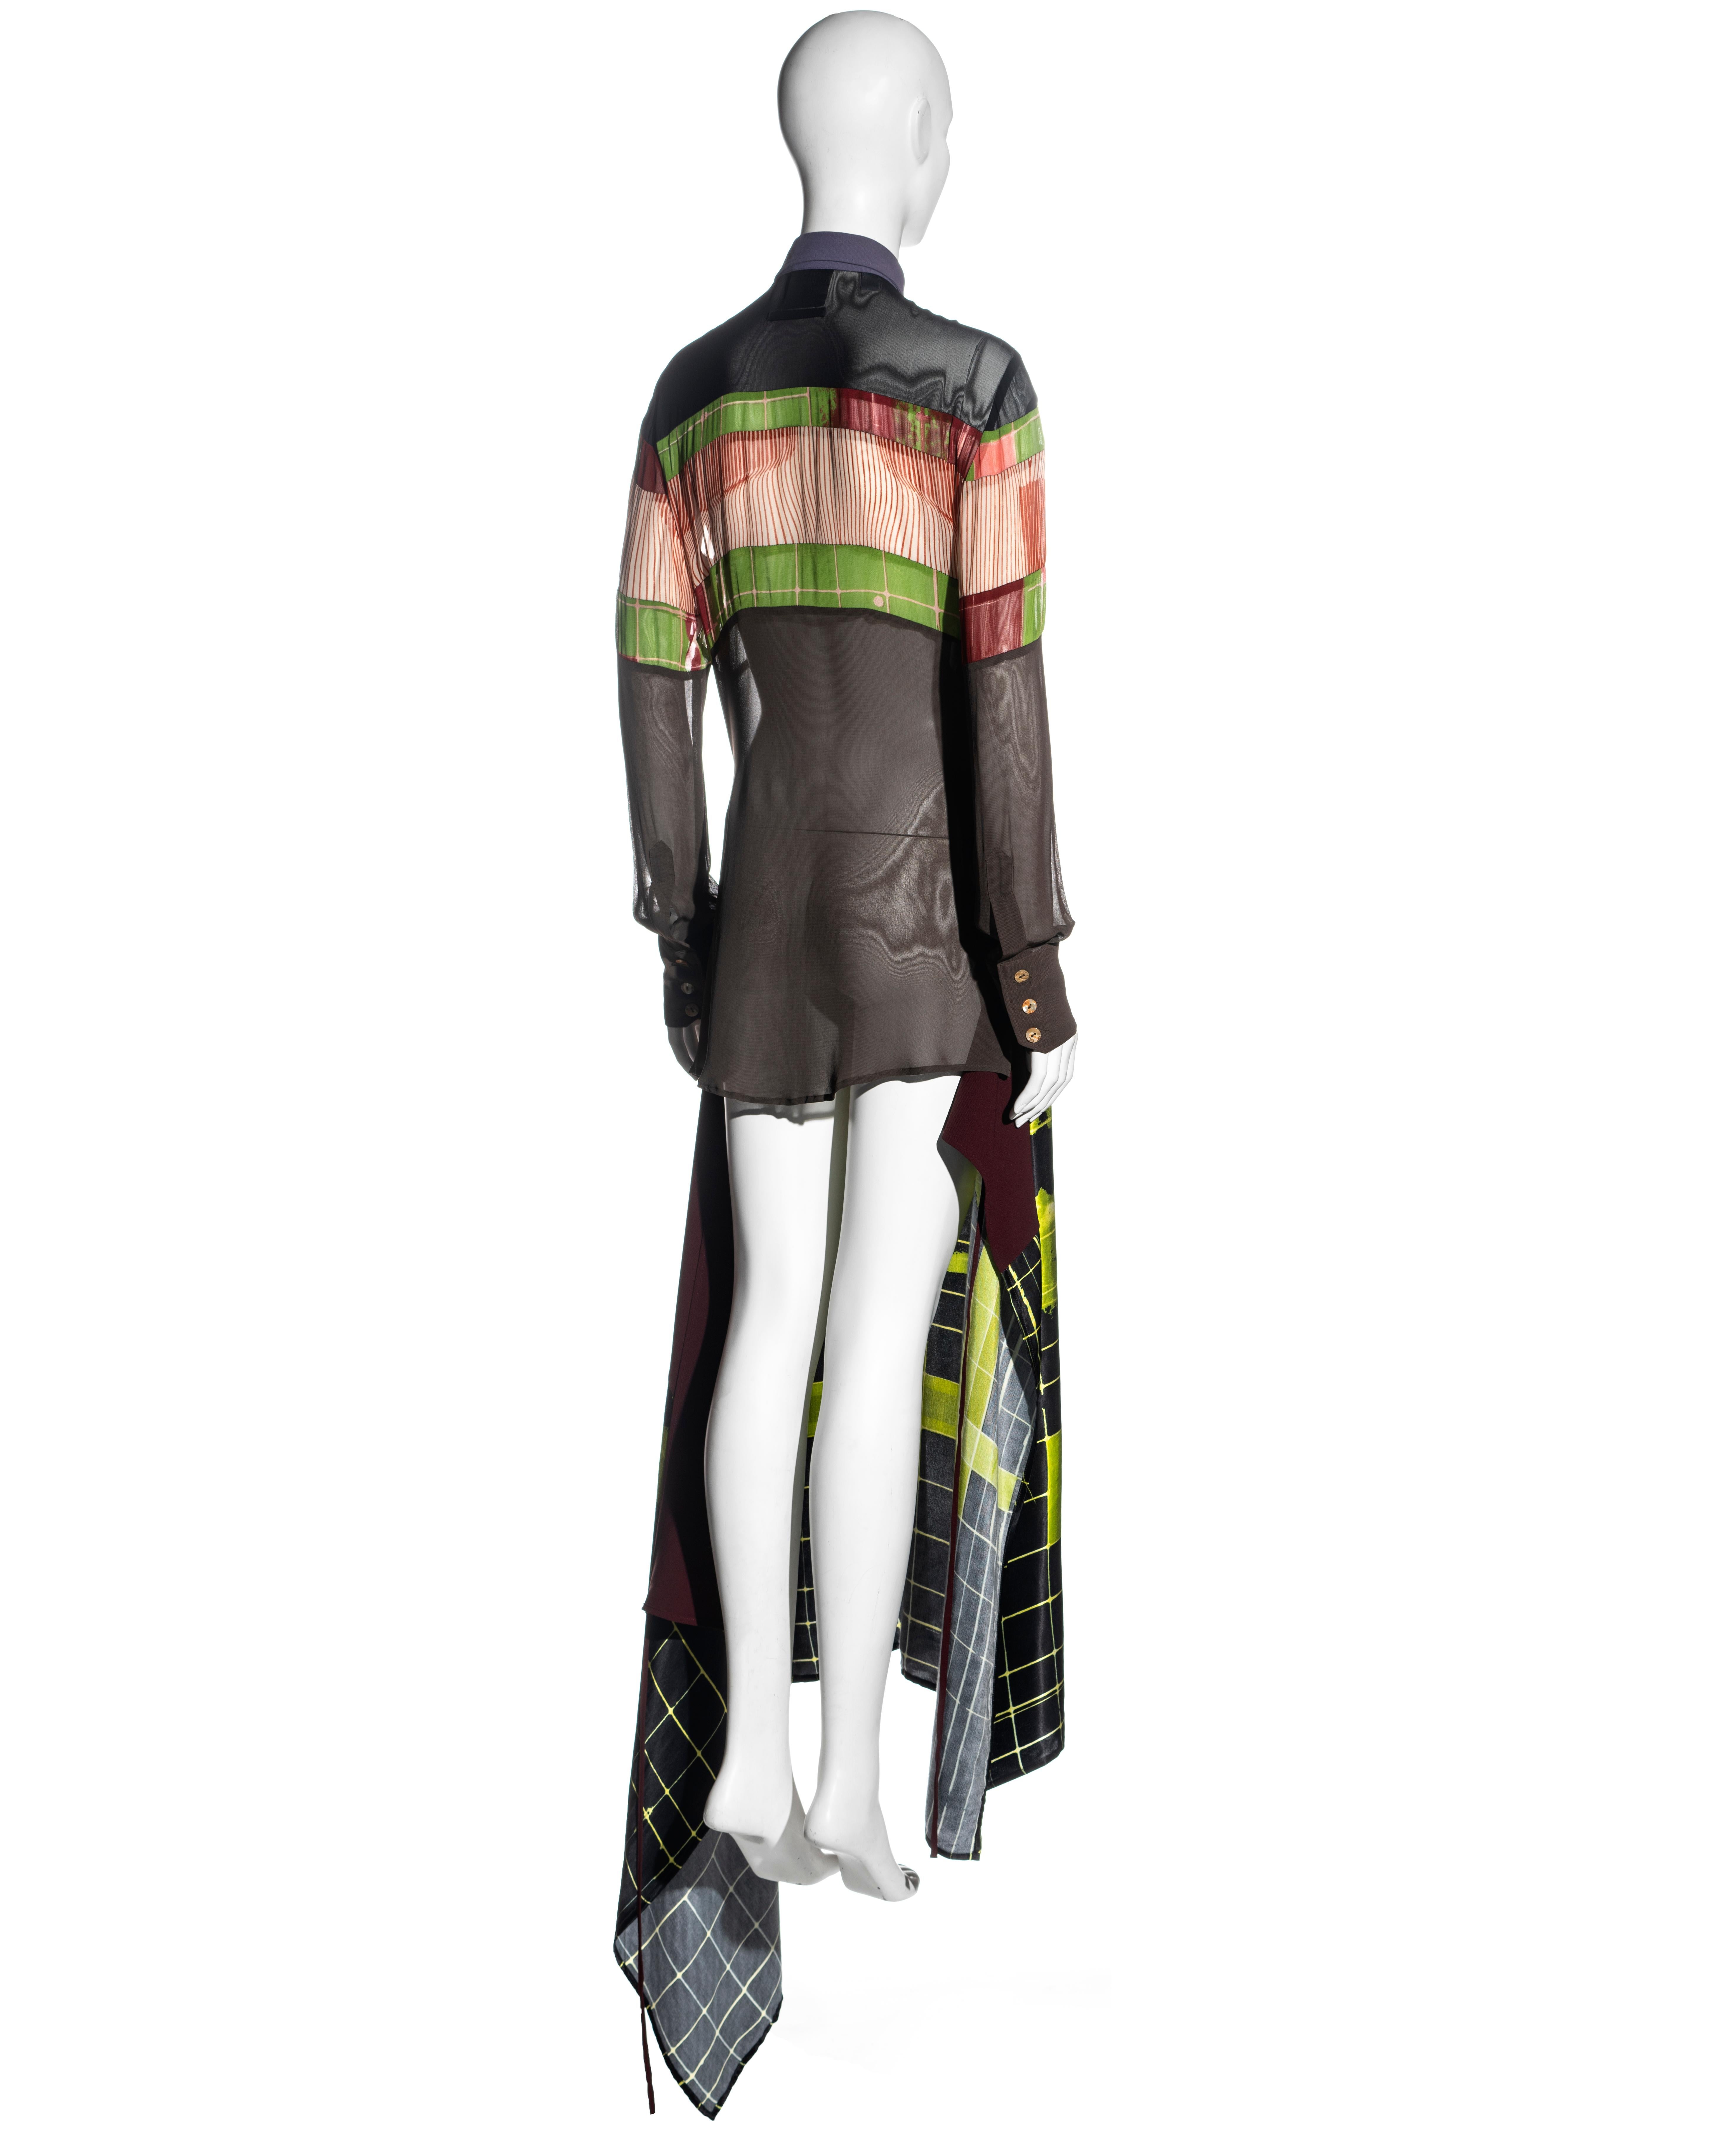 Jean Paul Gaulter 'Cyberhippie' shirt dress with wrap skirt, ss 1996 5